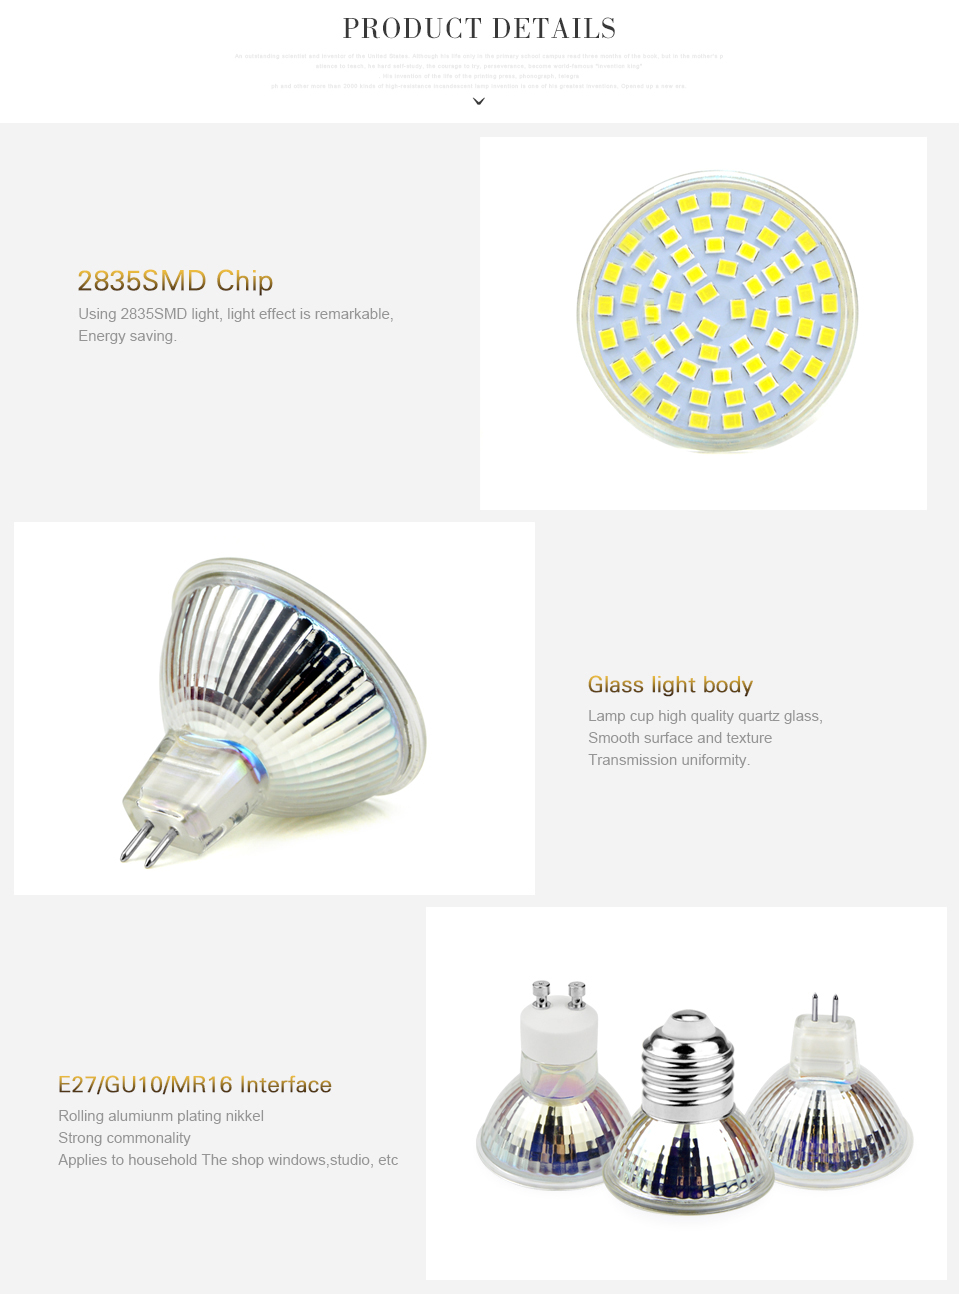 10Pcs AC 220V 2835 SMD 6W GU10 E27 MR16 60leds LED Lamp LED Spotlight Bulb Candle spot light Energy Saving Lights for Home